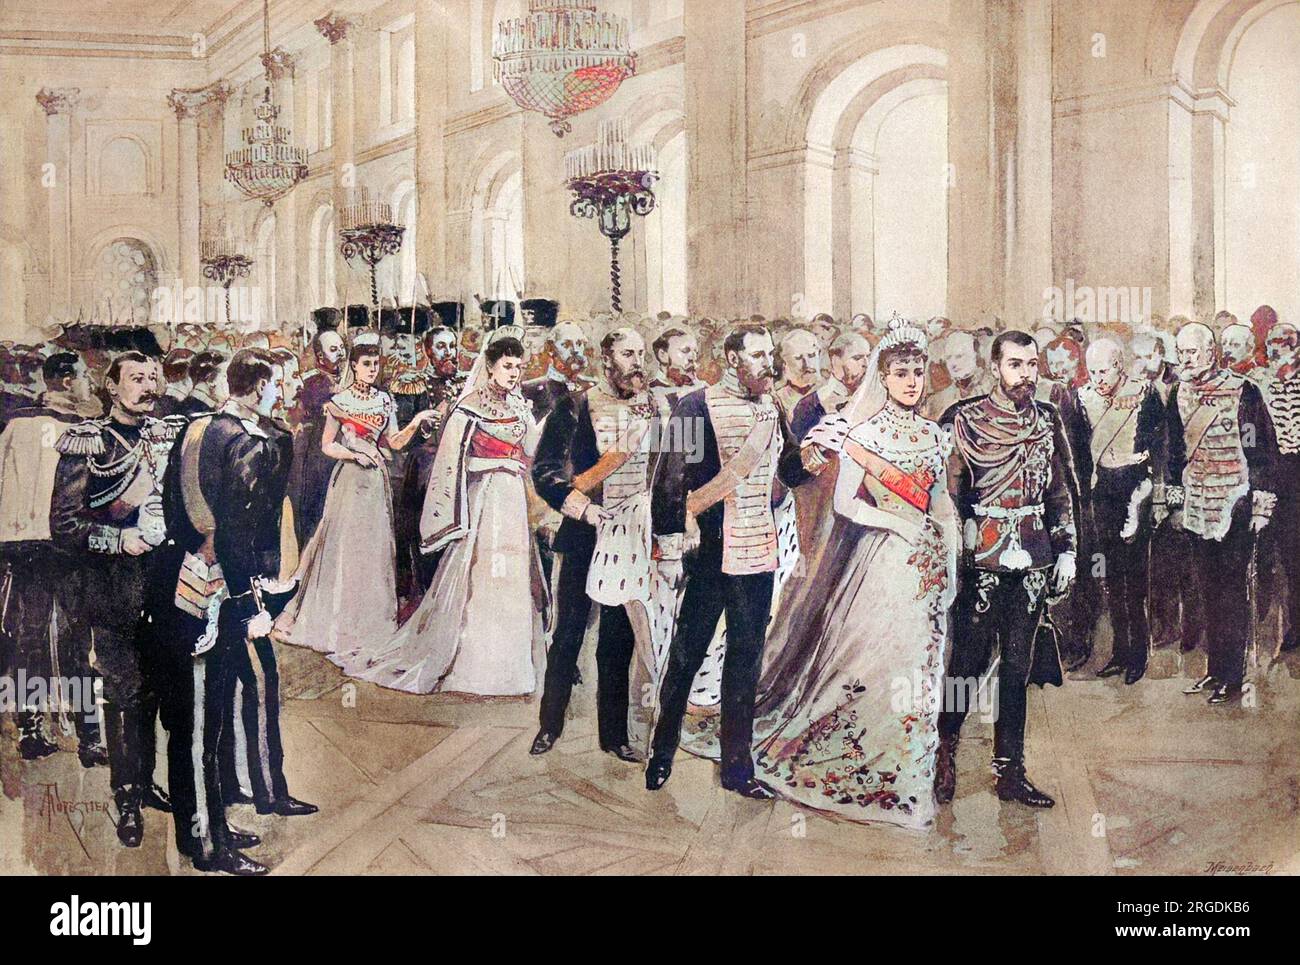 La procession va à la chapelle dans le Palais d'hiver, au cours du mariage o Tsar Nicolas II et la Grande-Duchesse Alexandra Feodorovna, Princesse Alix de Hesse. Banque D'Images